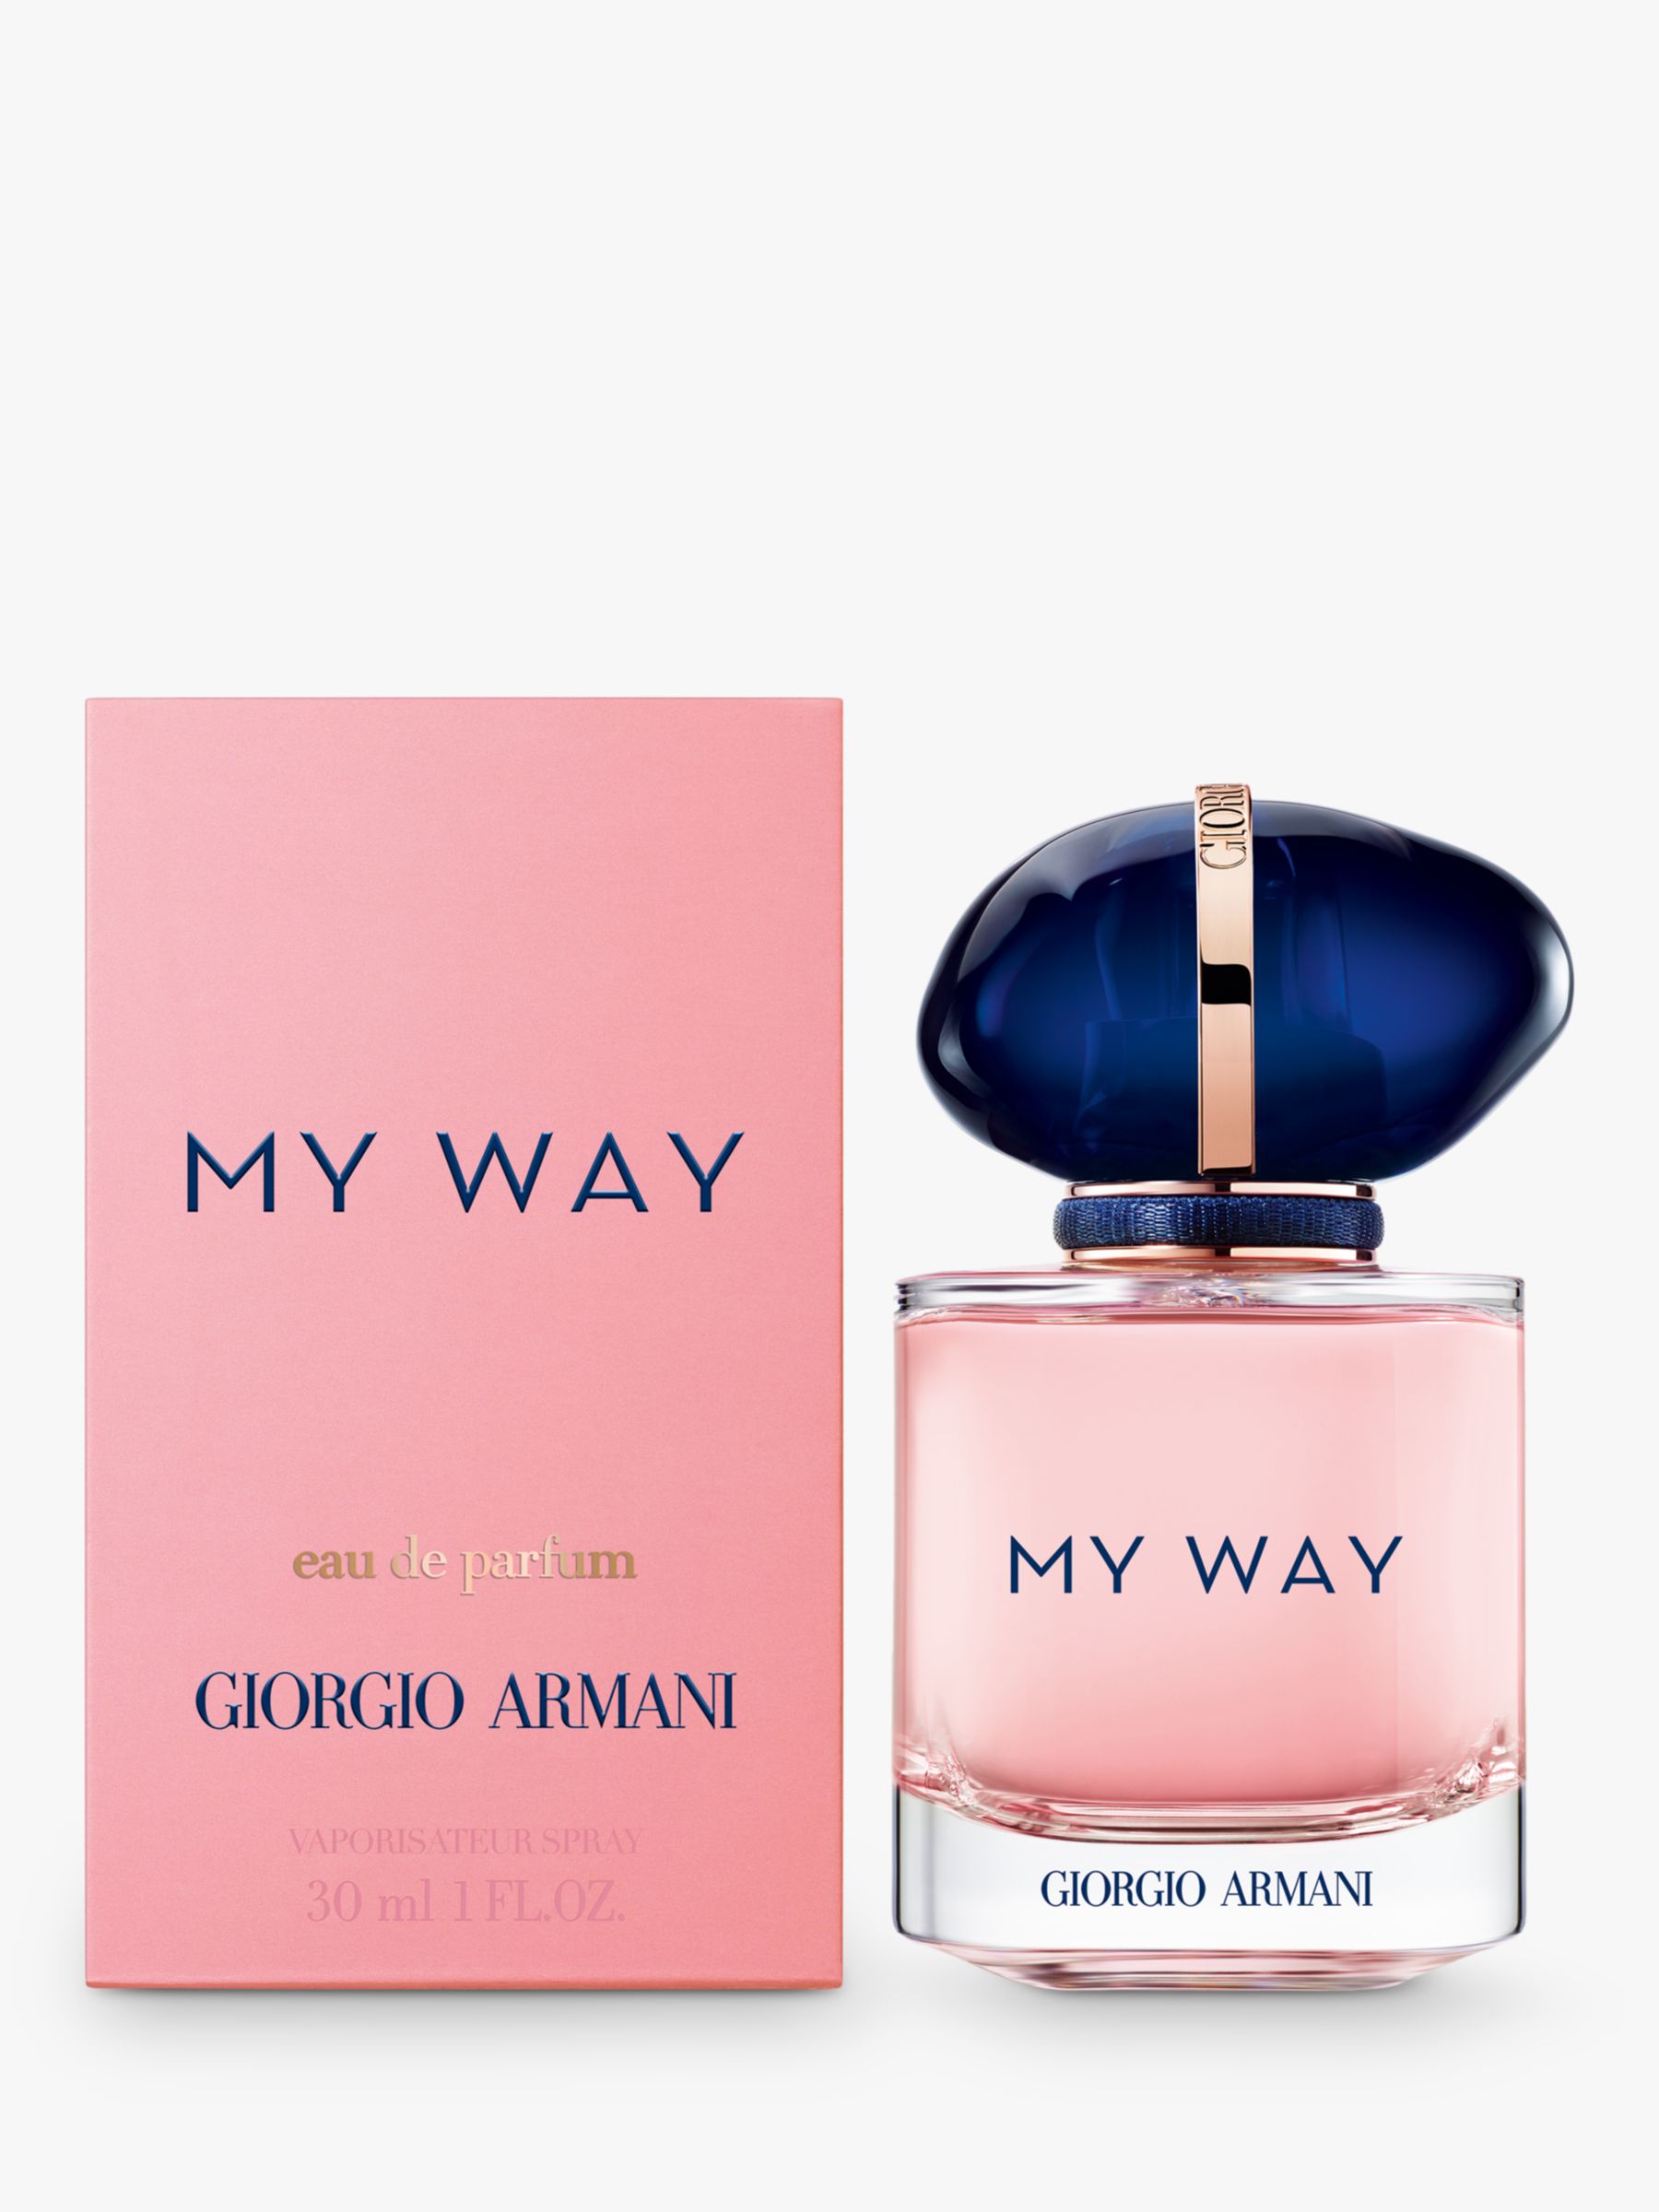 Giorgio Armani My Way Eau de Parfum Refillable, 30ml 2